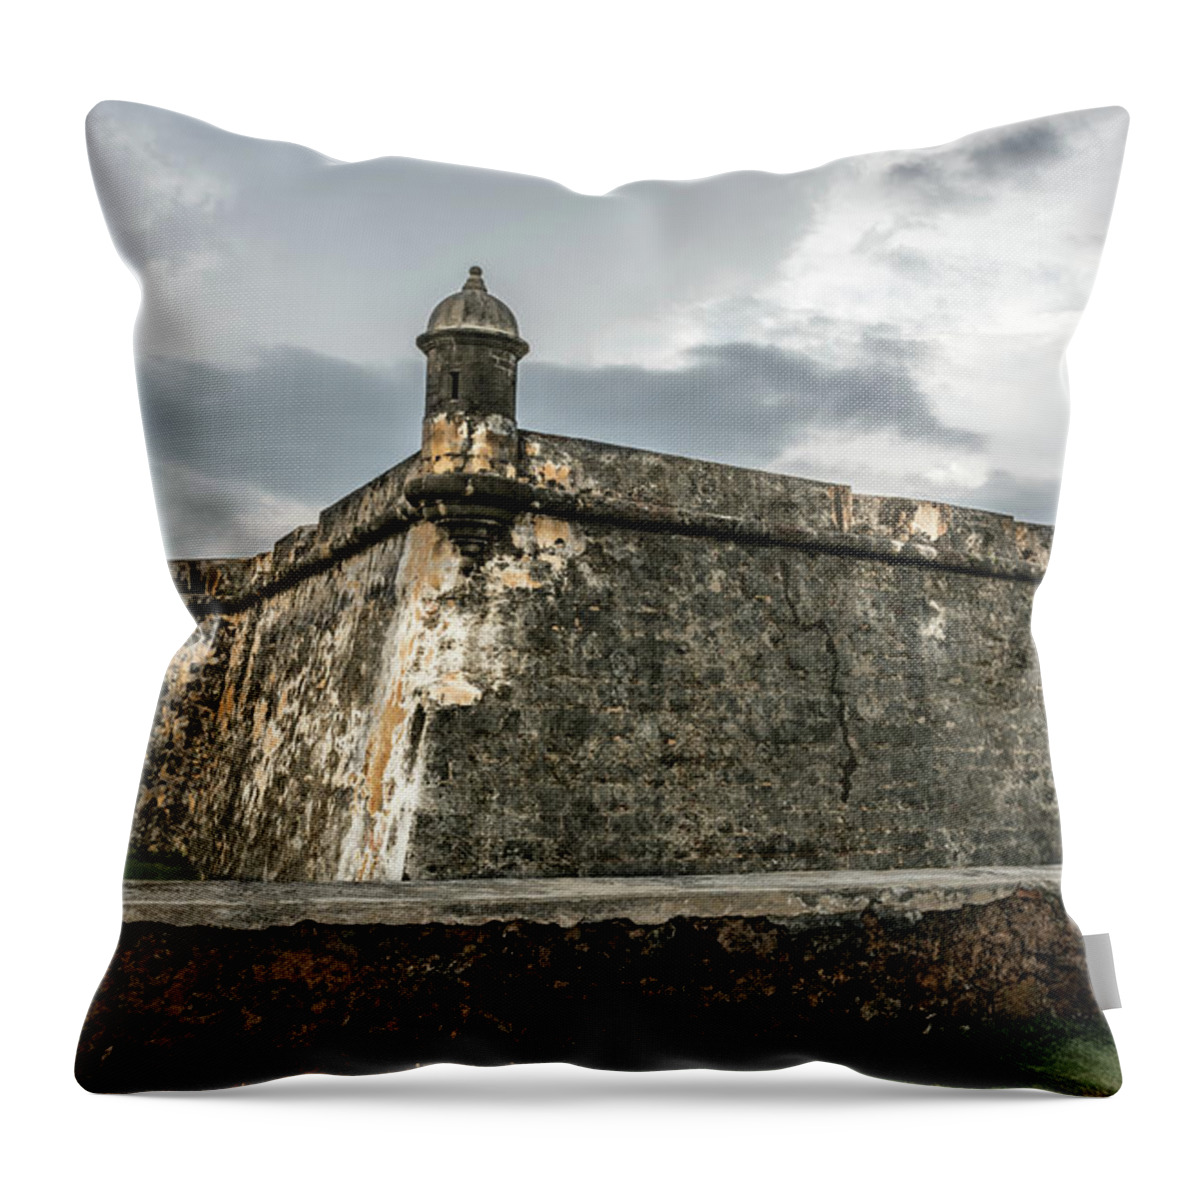 Fort Throw Pillow featuring the photograph Castillo San Felipe del Morro by Jaime Mercado